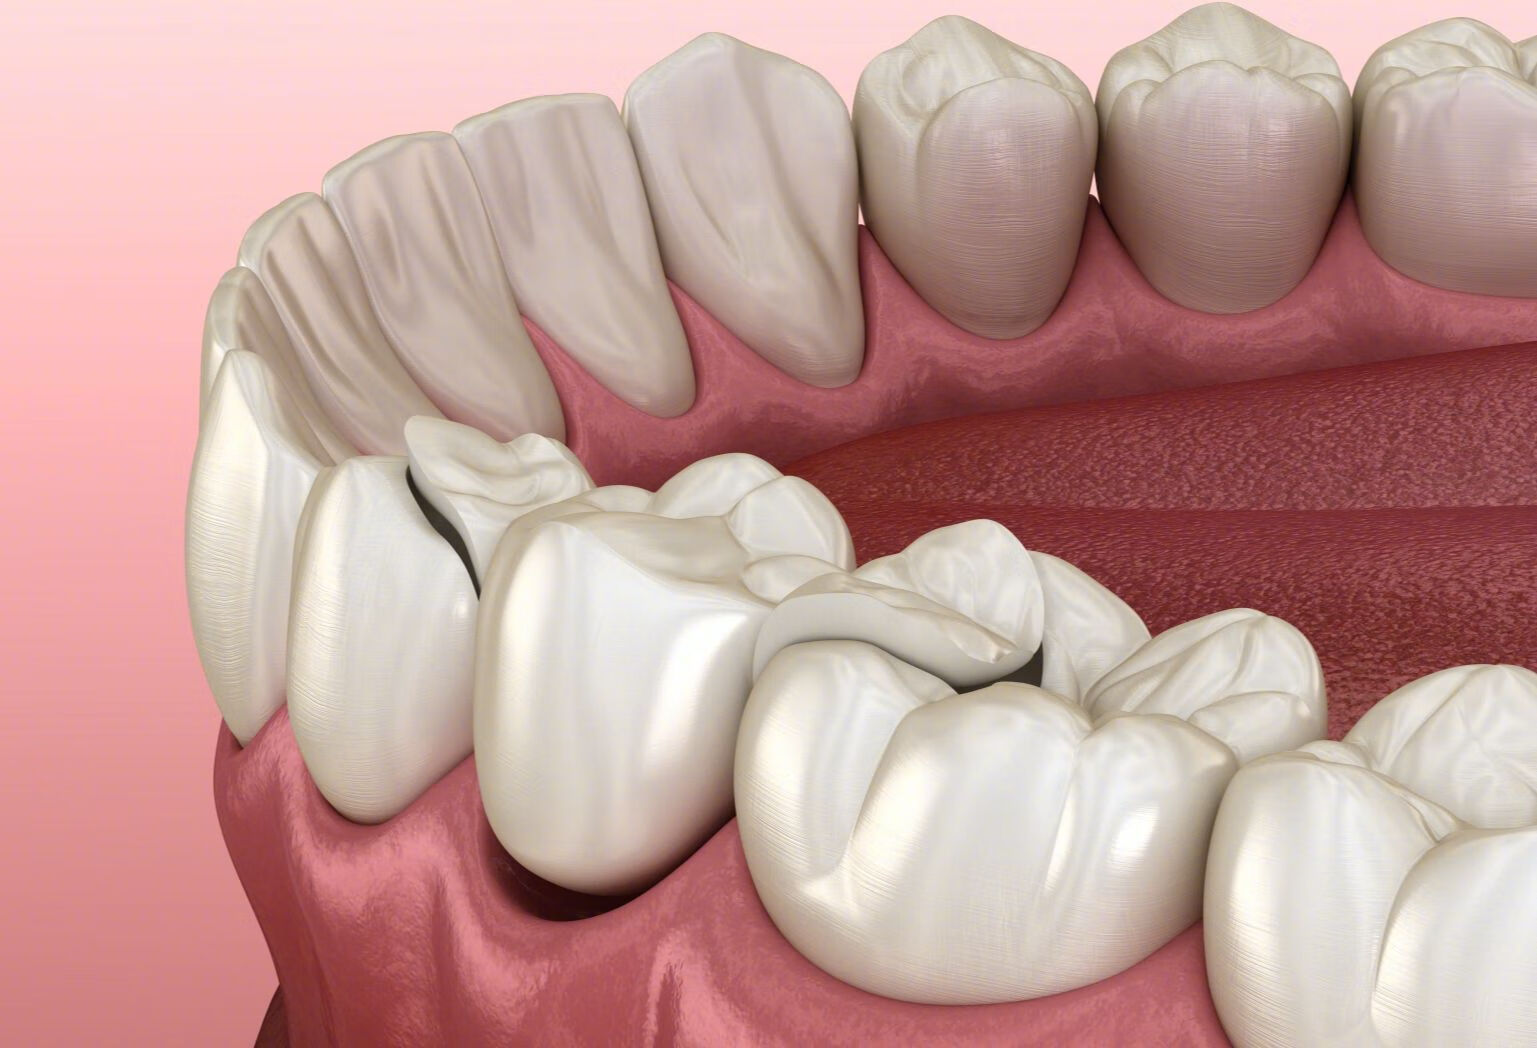 医生设计牙齿矫正方案需要考虑哪些因素？